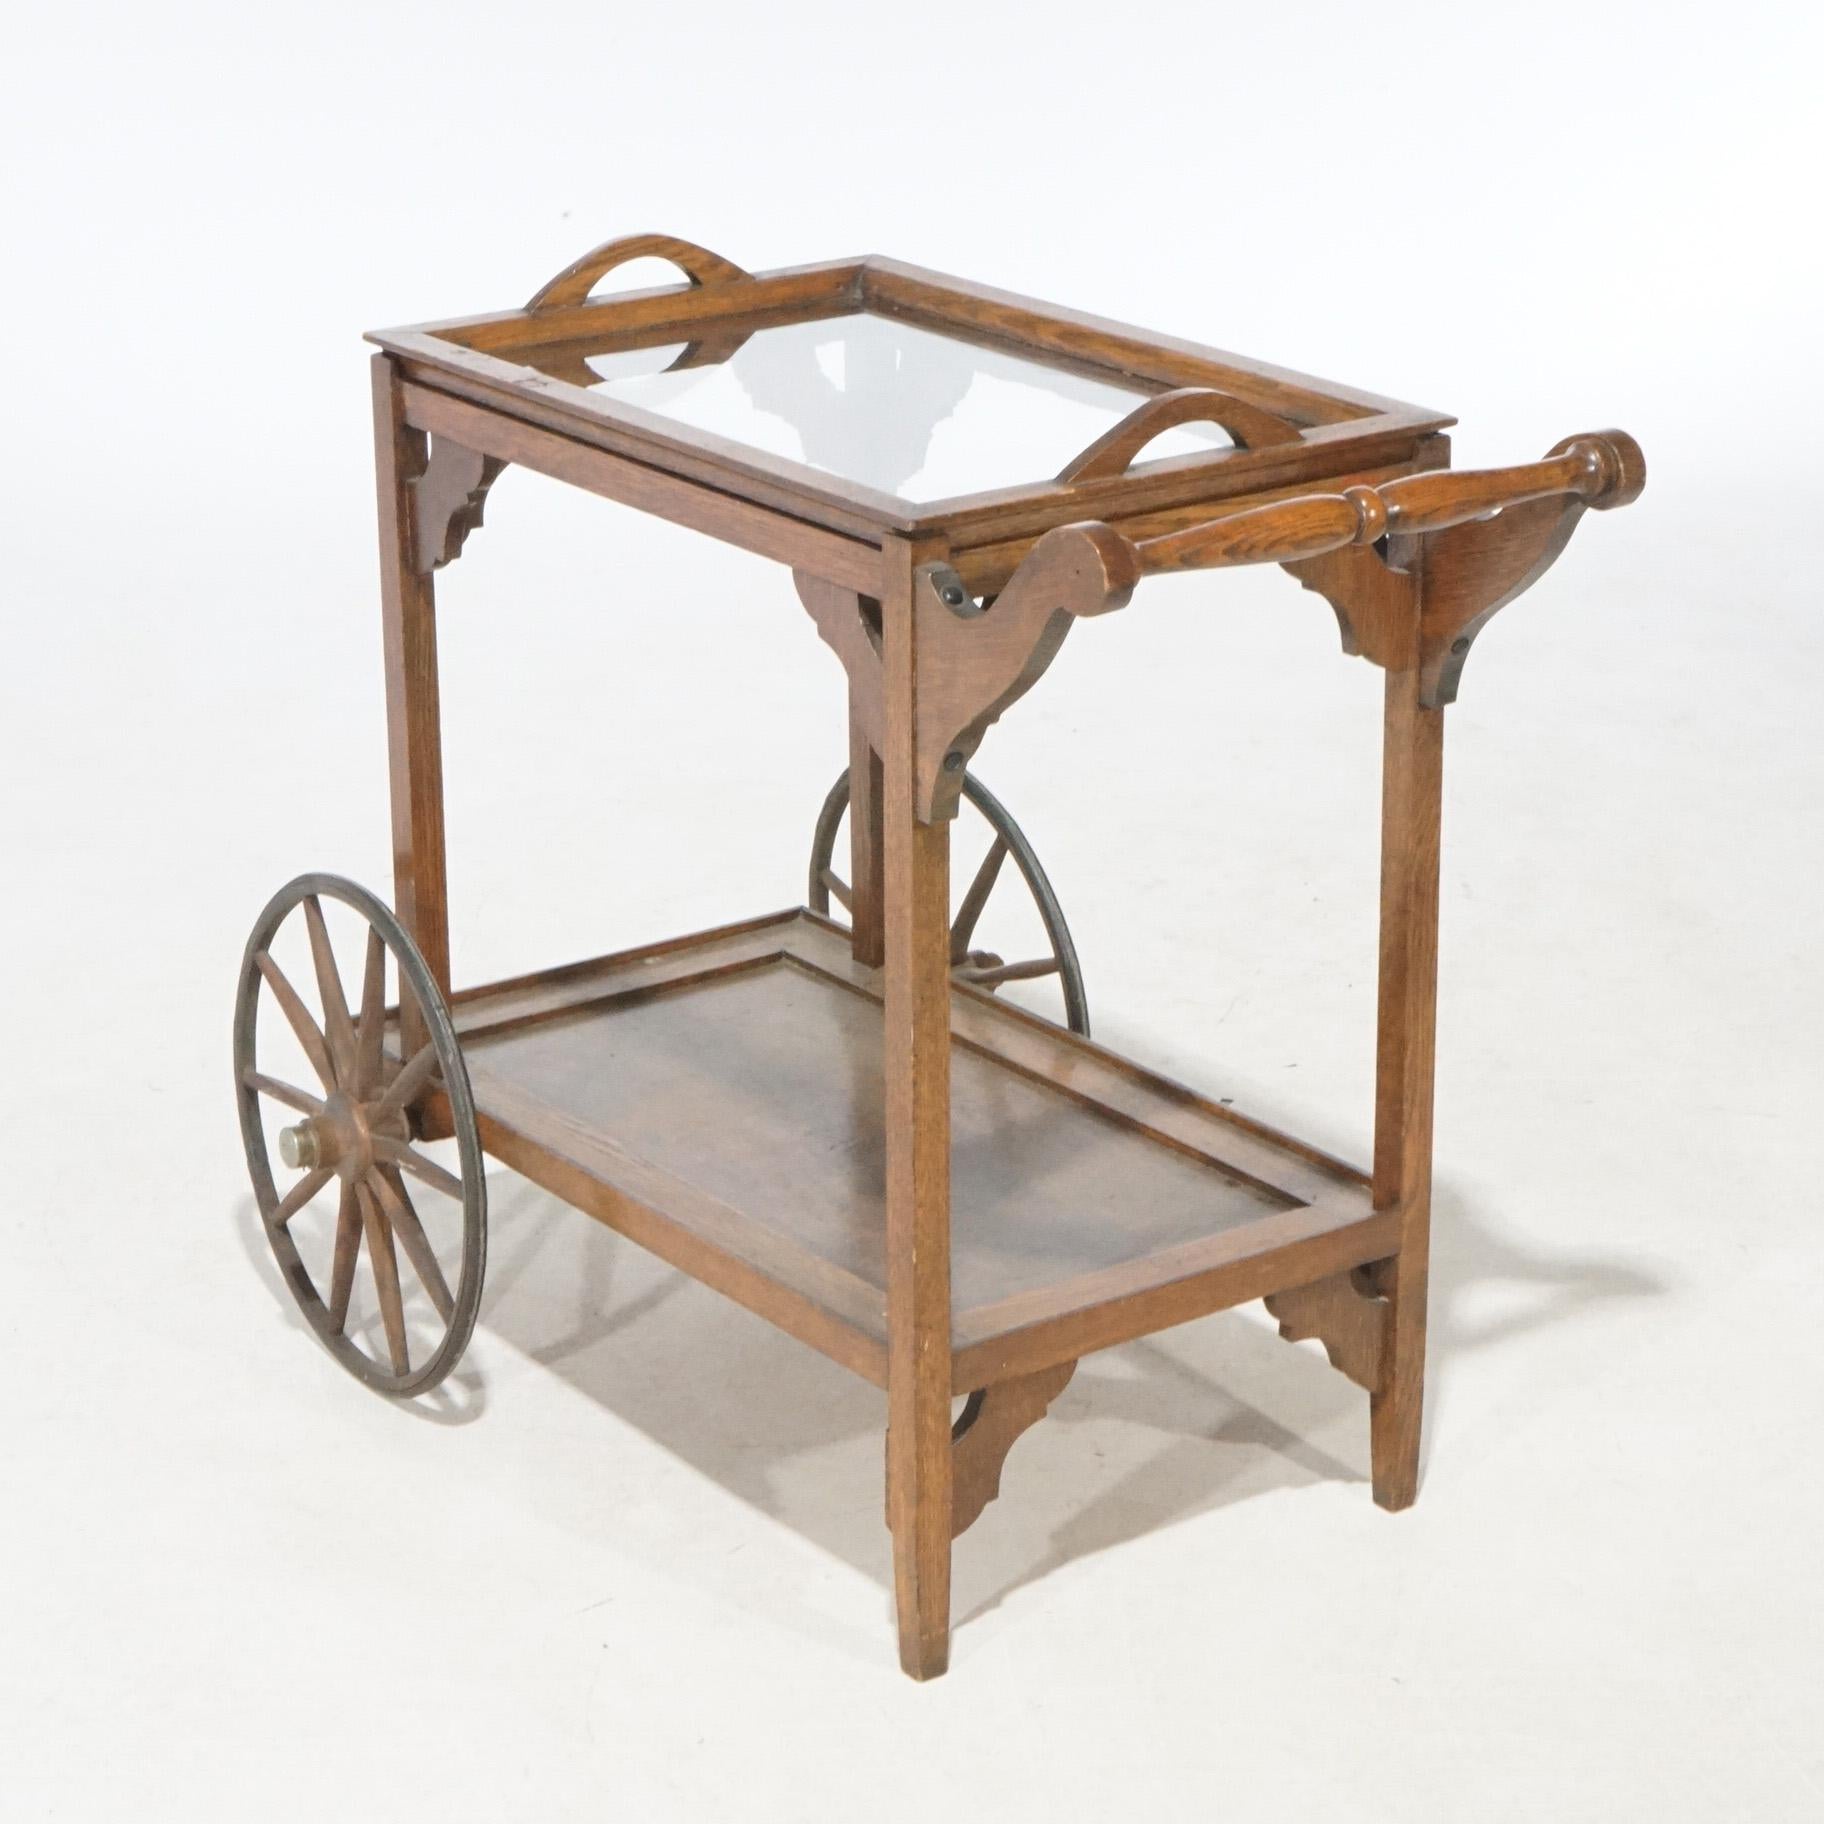 Chariot à thé antique de style Arte Antiques, en chêne, avec plateau de service amovible et roues surdimensionnées, vers 1910.

Mesures - 30,5 